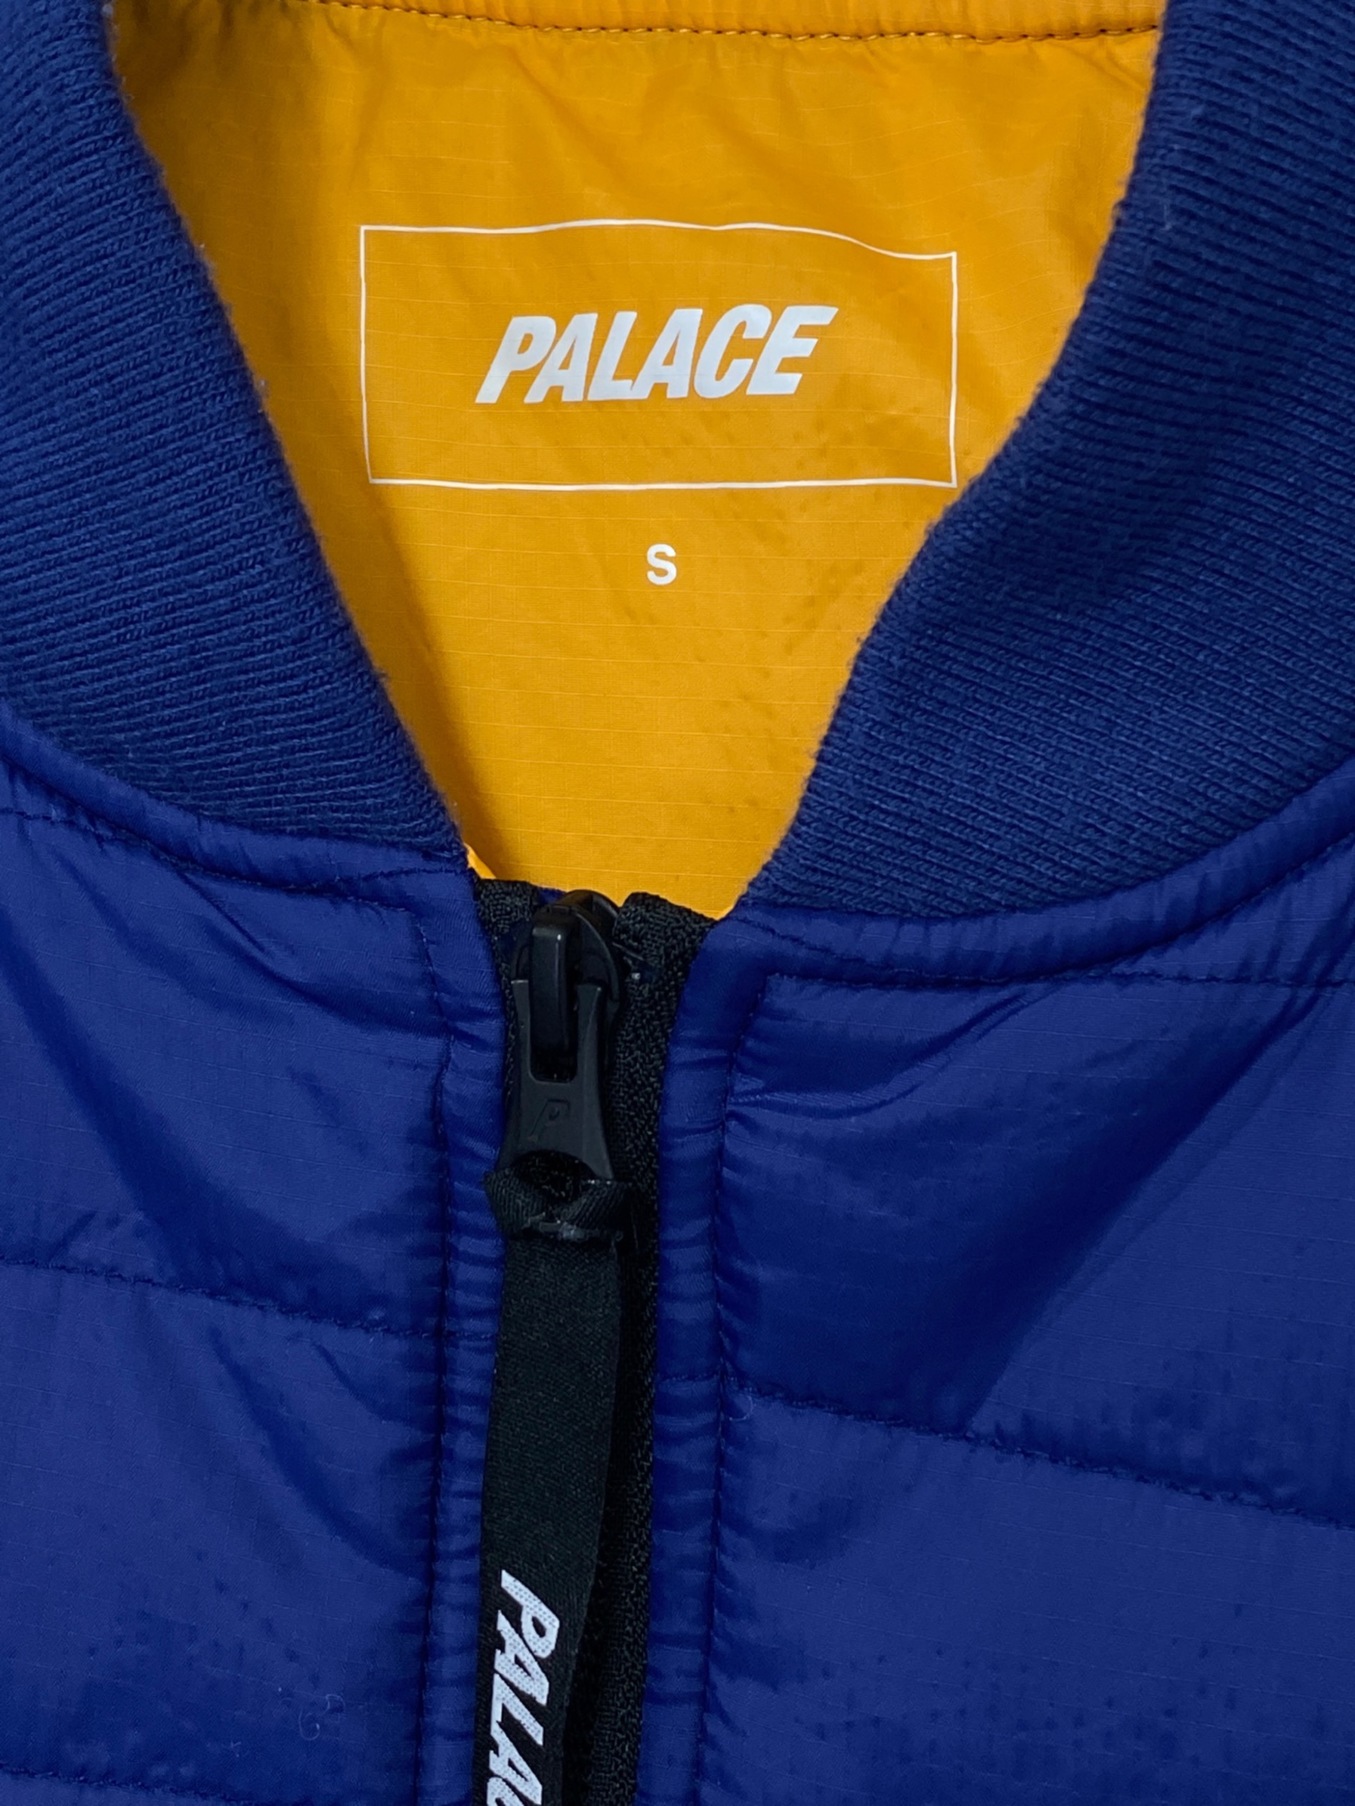 PALACE (パレス) HALF ZIP PACKER ブルー サイズ:S